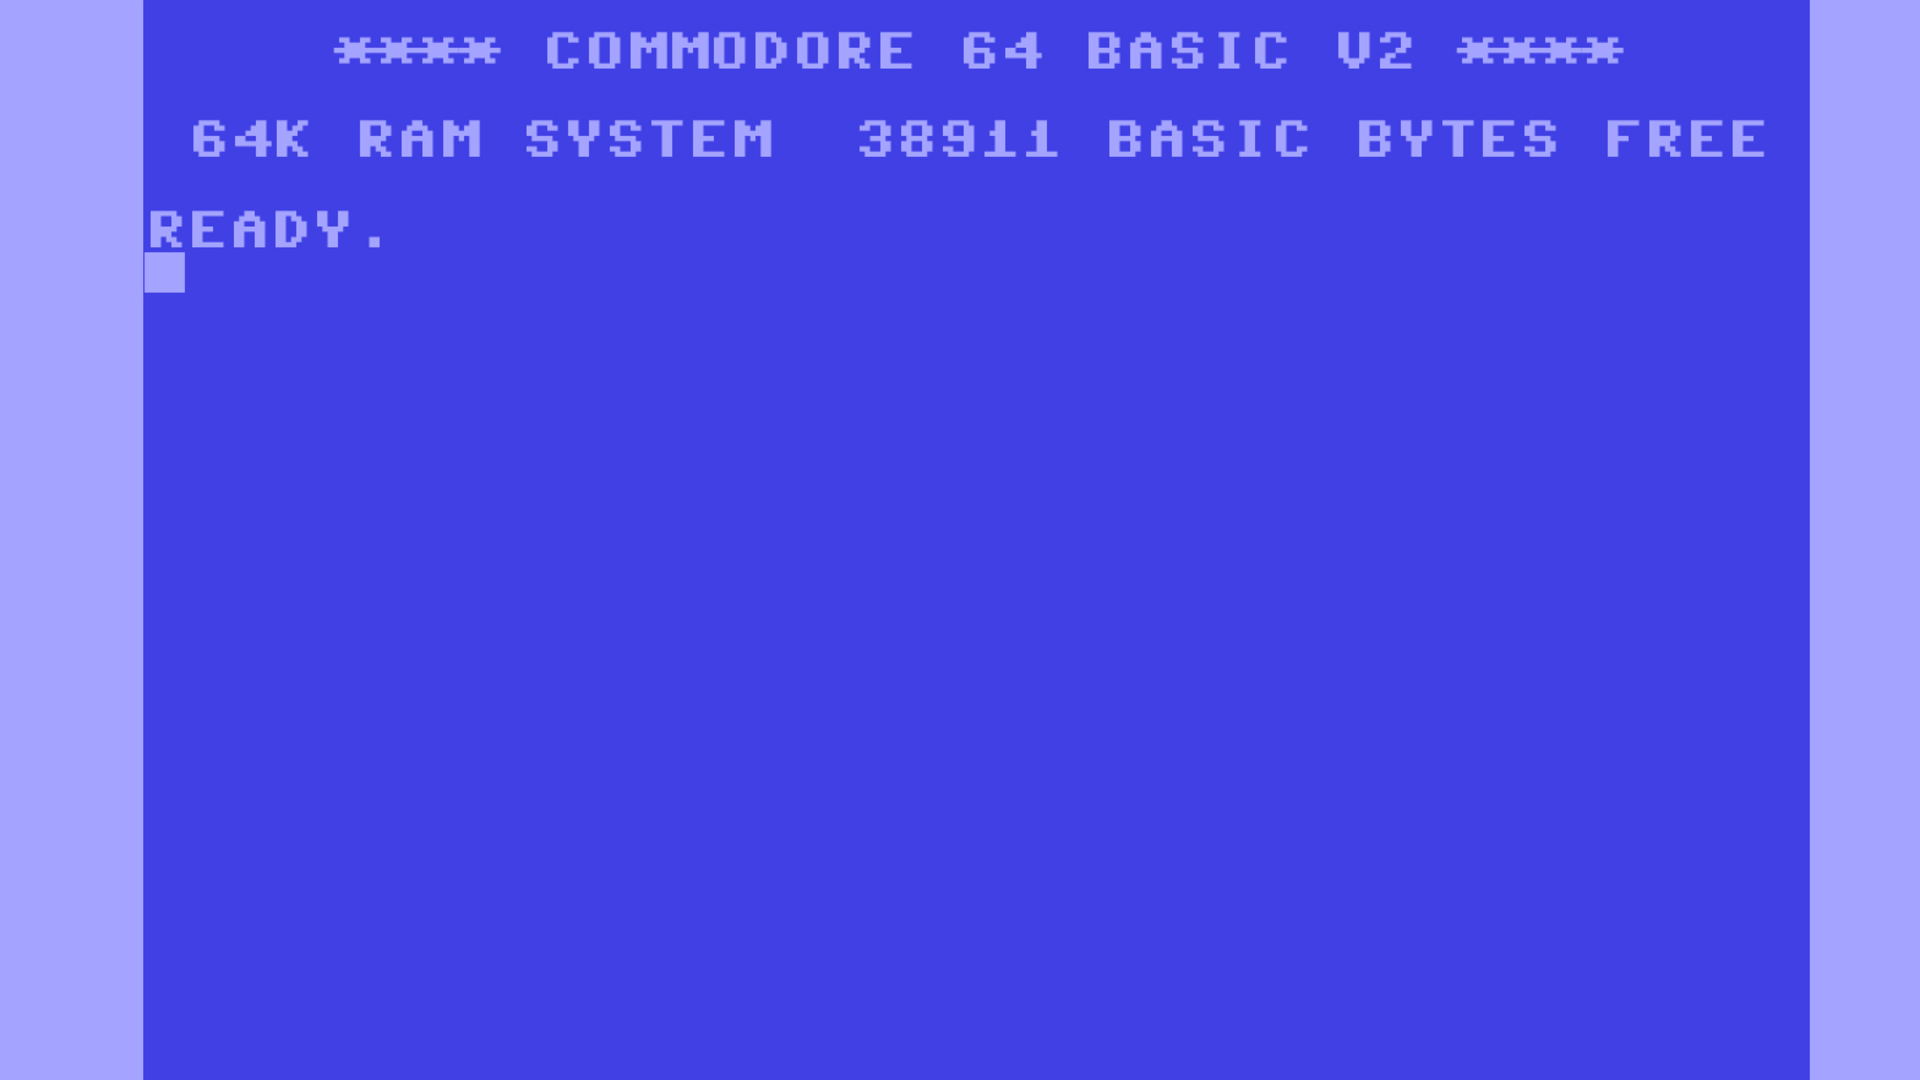 Classic Commodore C64 Wallpaper [1.920px × 1.080p]: pics